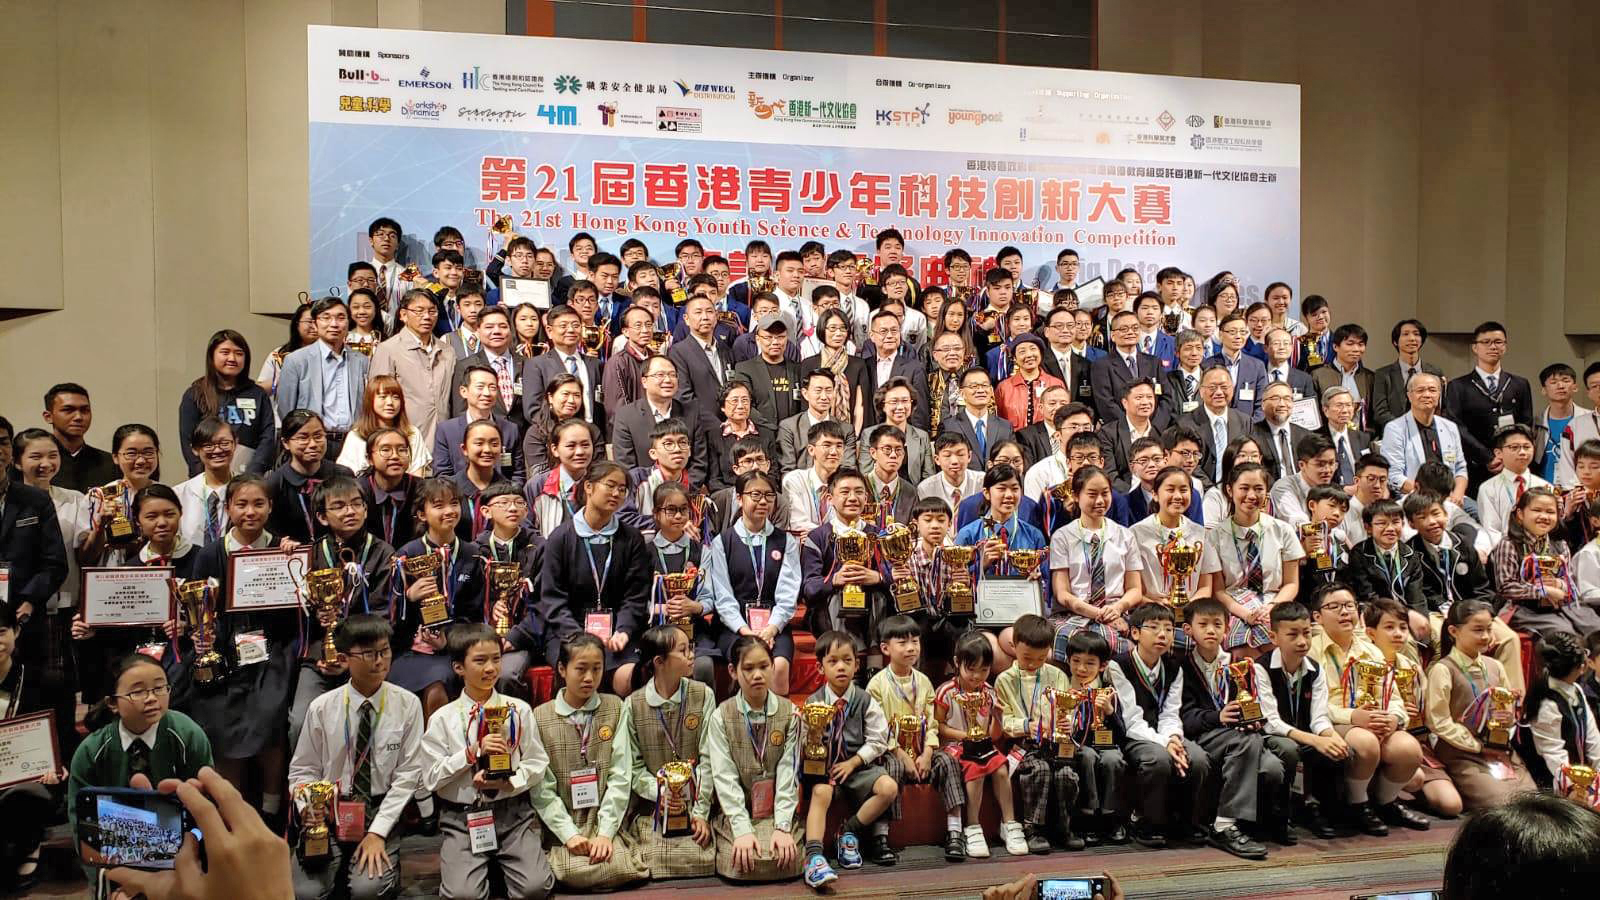 第21屆香港青少年科技創新大賽2018-2019